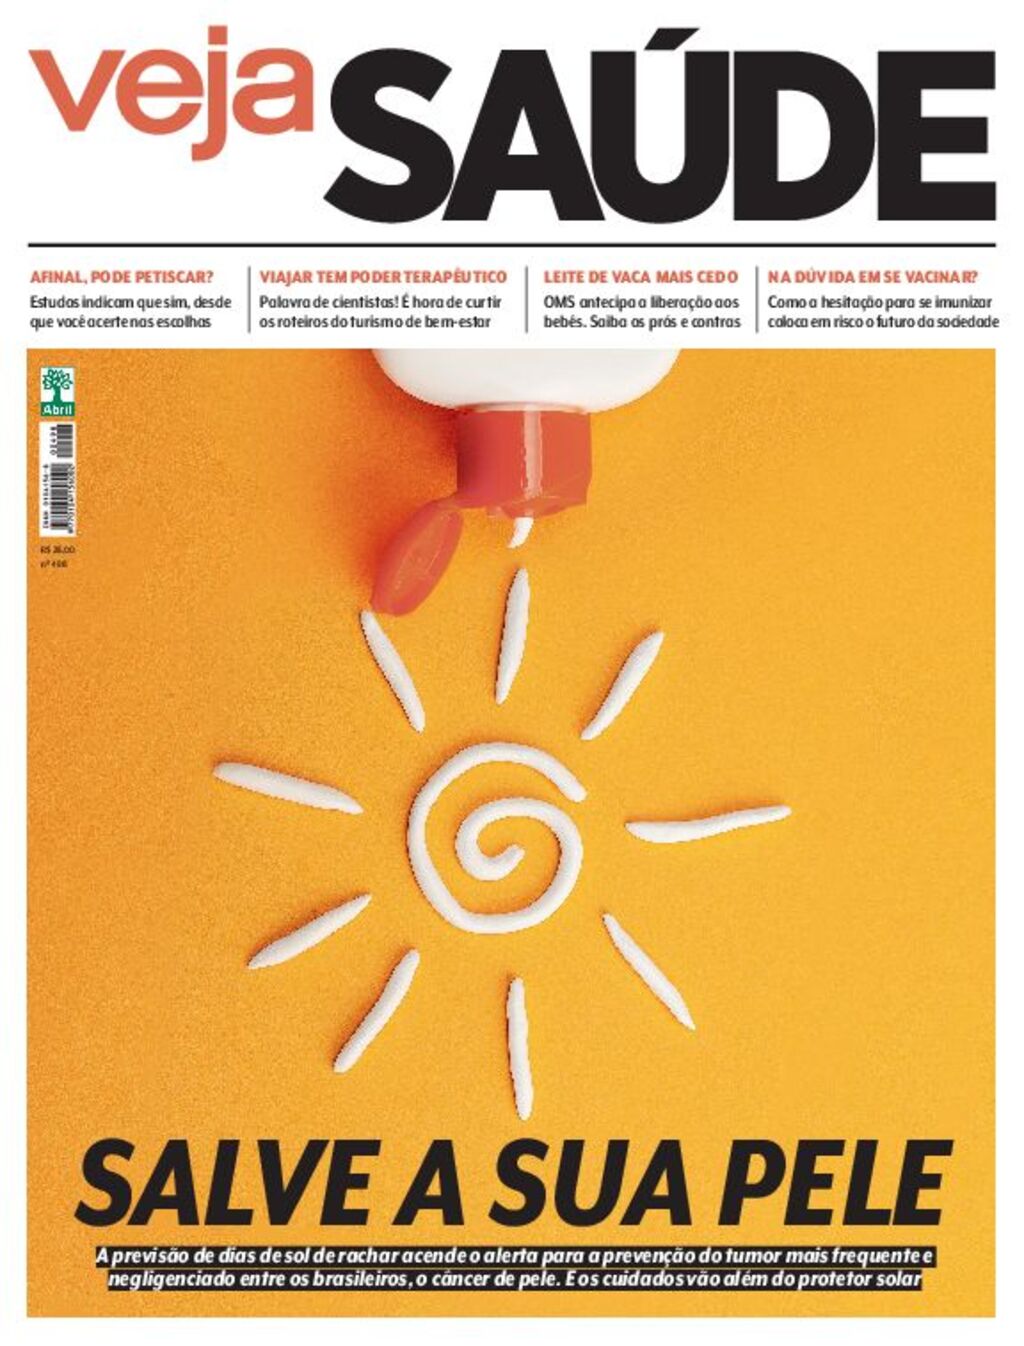 Google oferece revistas e jornais digitais na Play Store brasileira